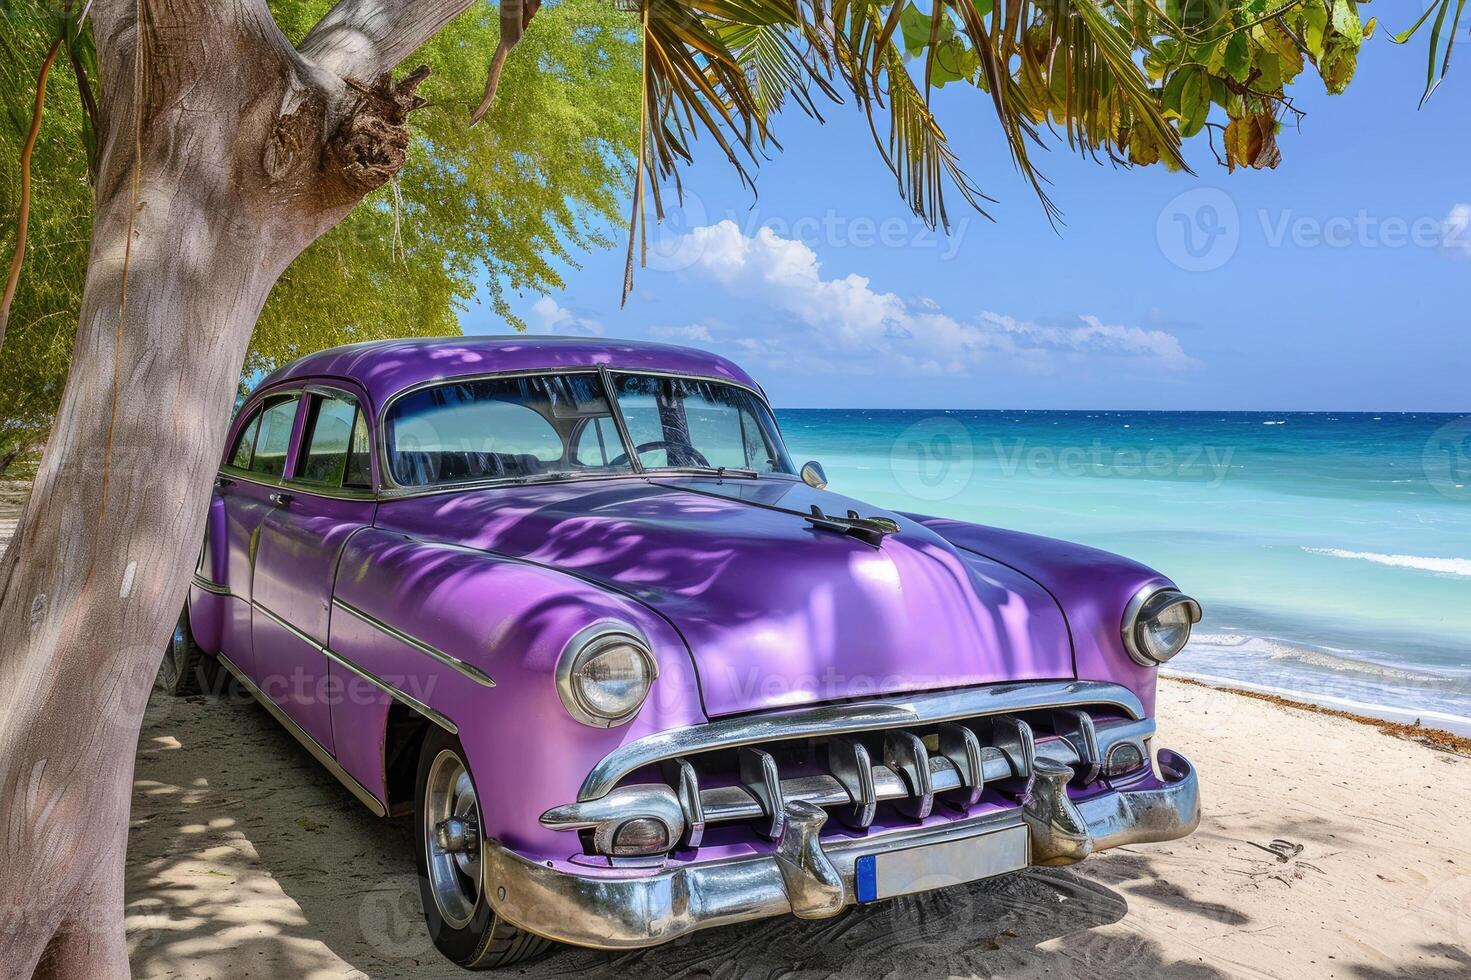 ai gerado vintage roxa americano carro dentro cubano costa foto